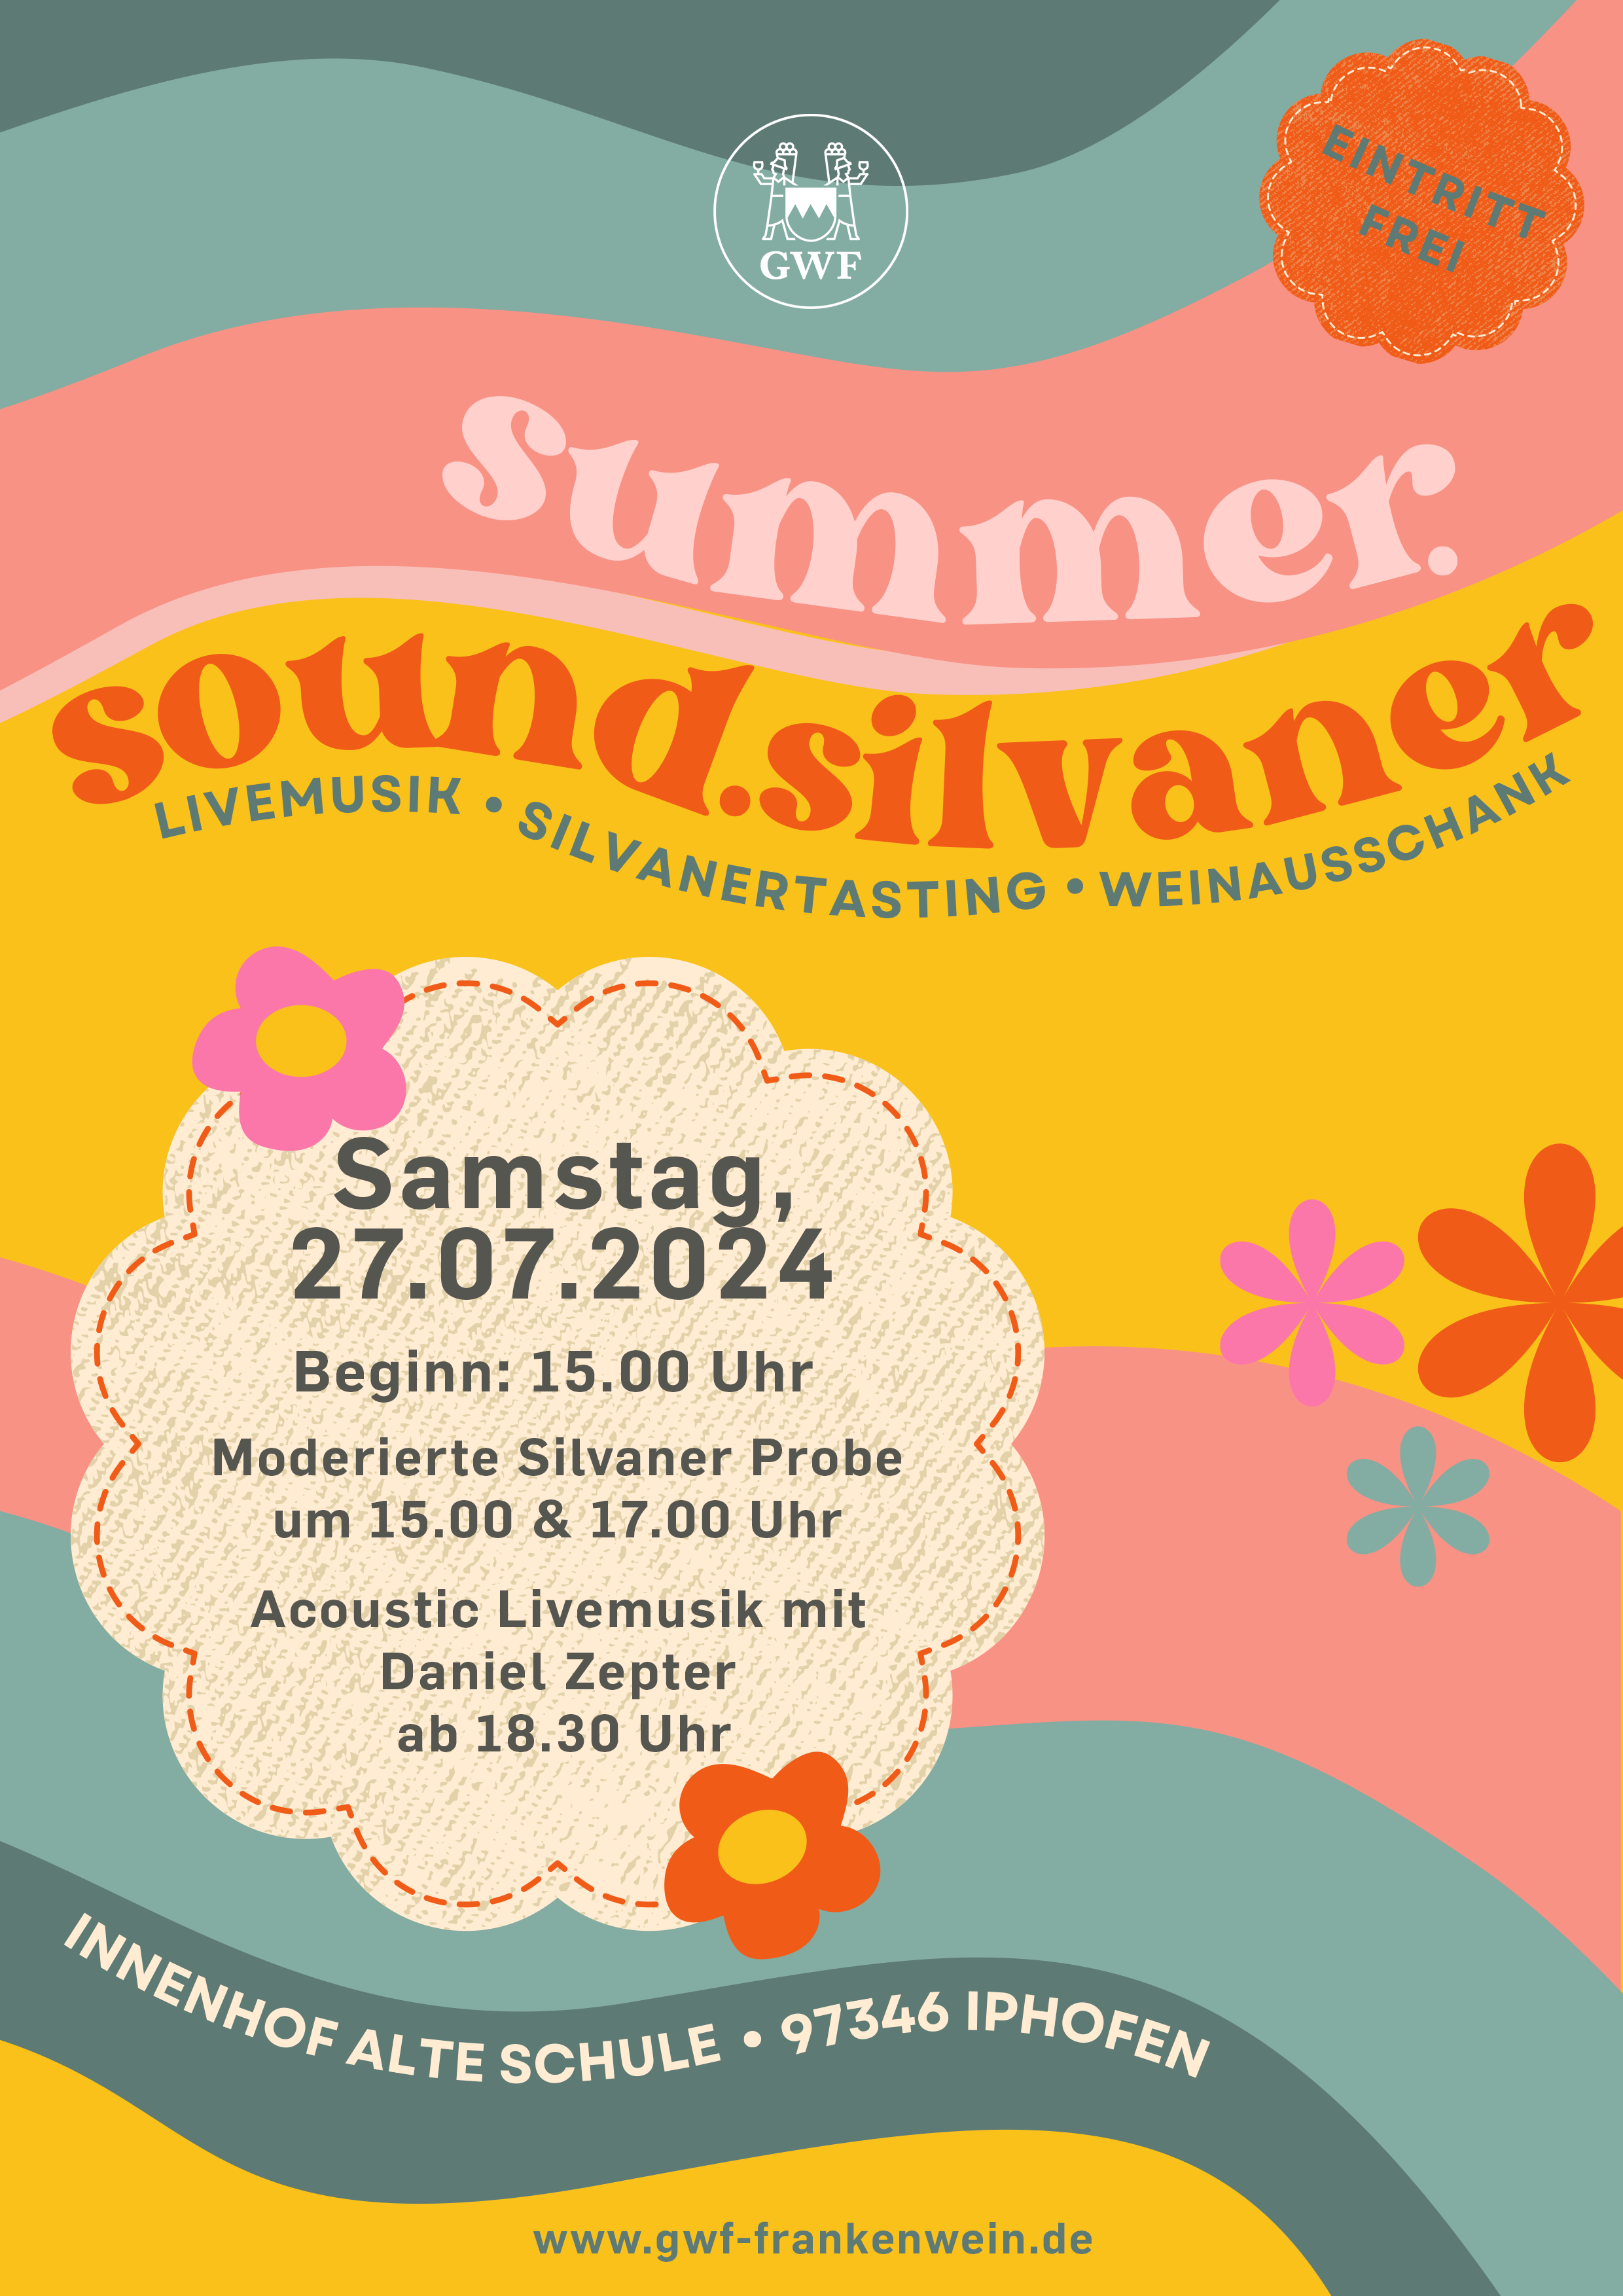 Winzergemeinschaft Franken_sommer_sound_silvaner_Weinfest in Iphofen